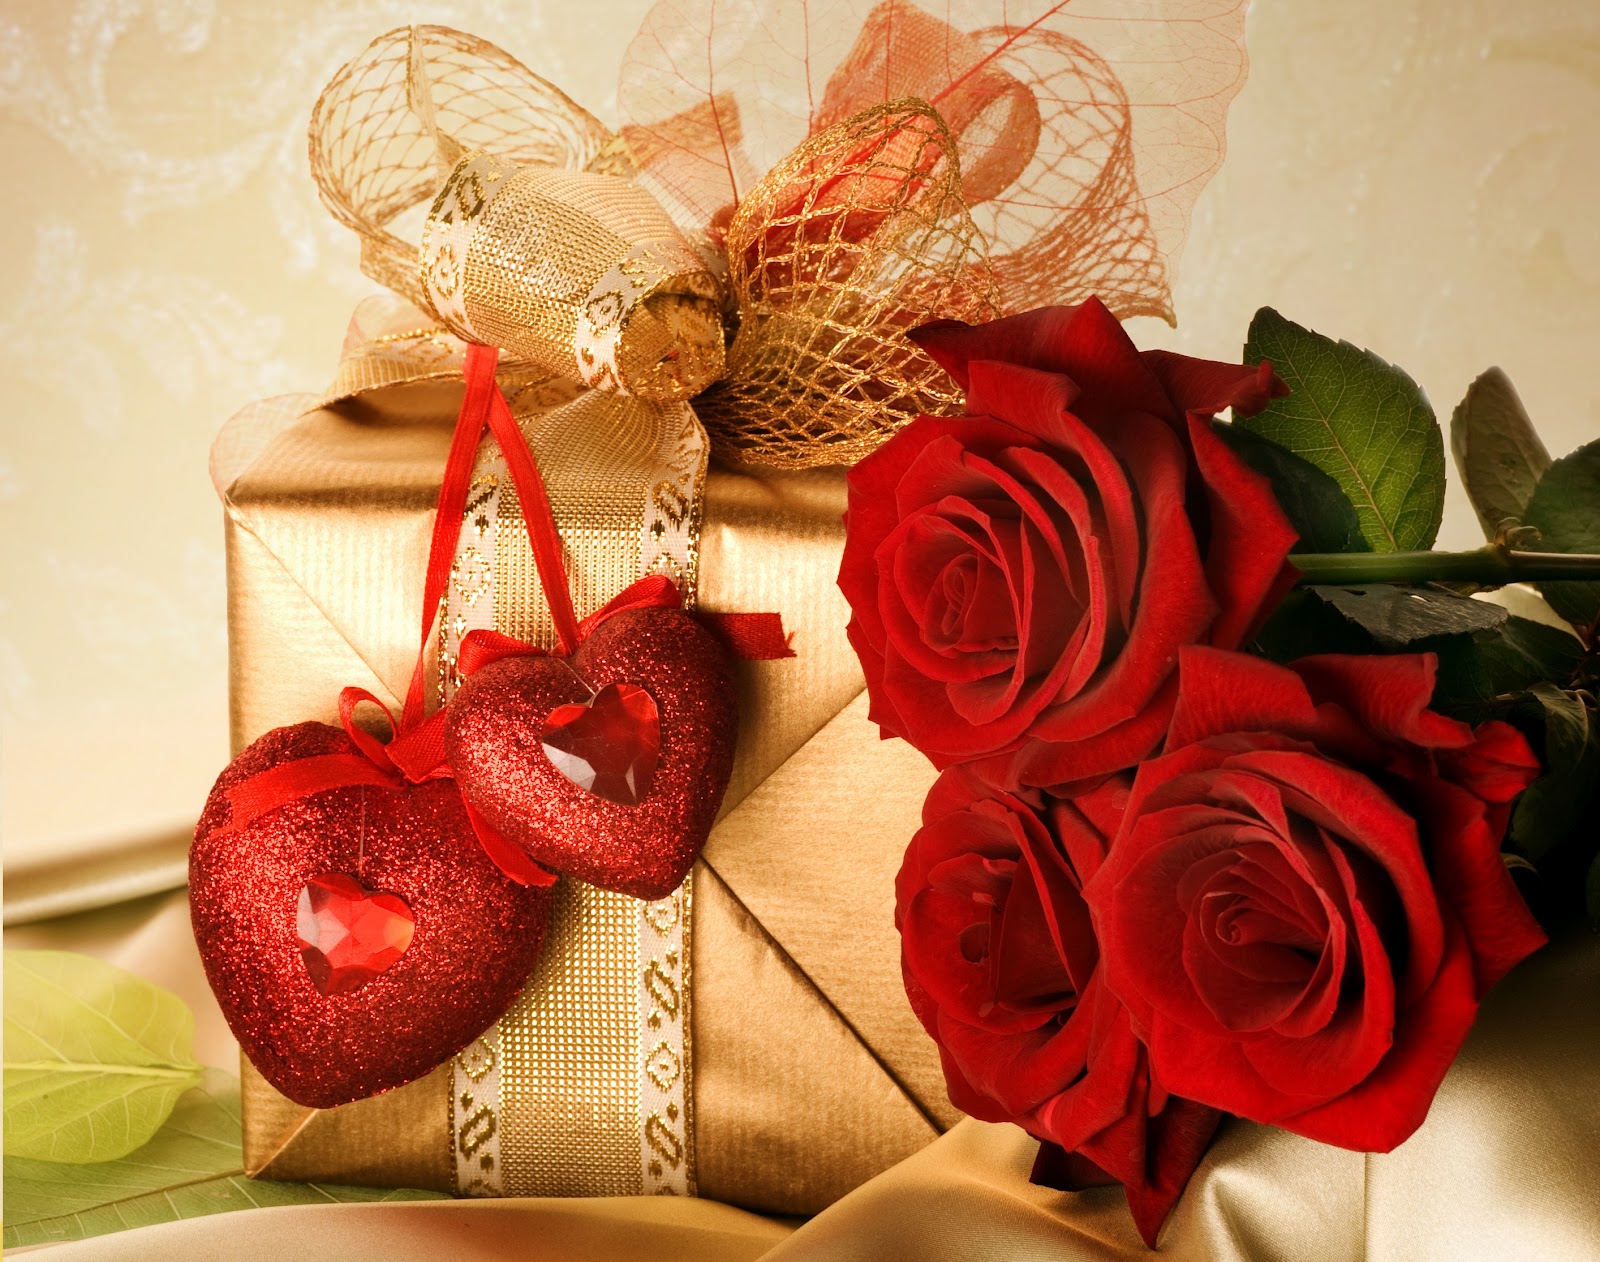 liebe rose tapete,rot,valentinstag,schnittblumen,rose,blume